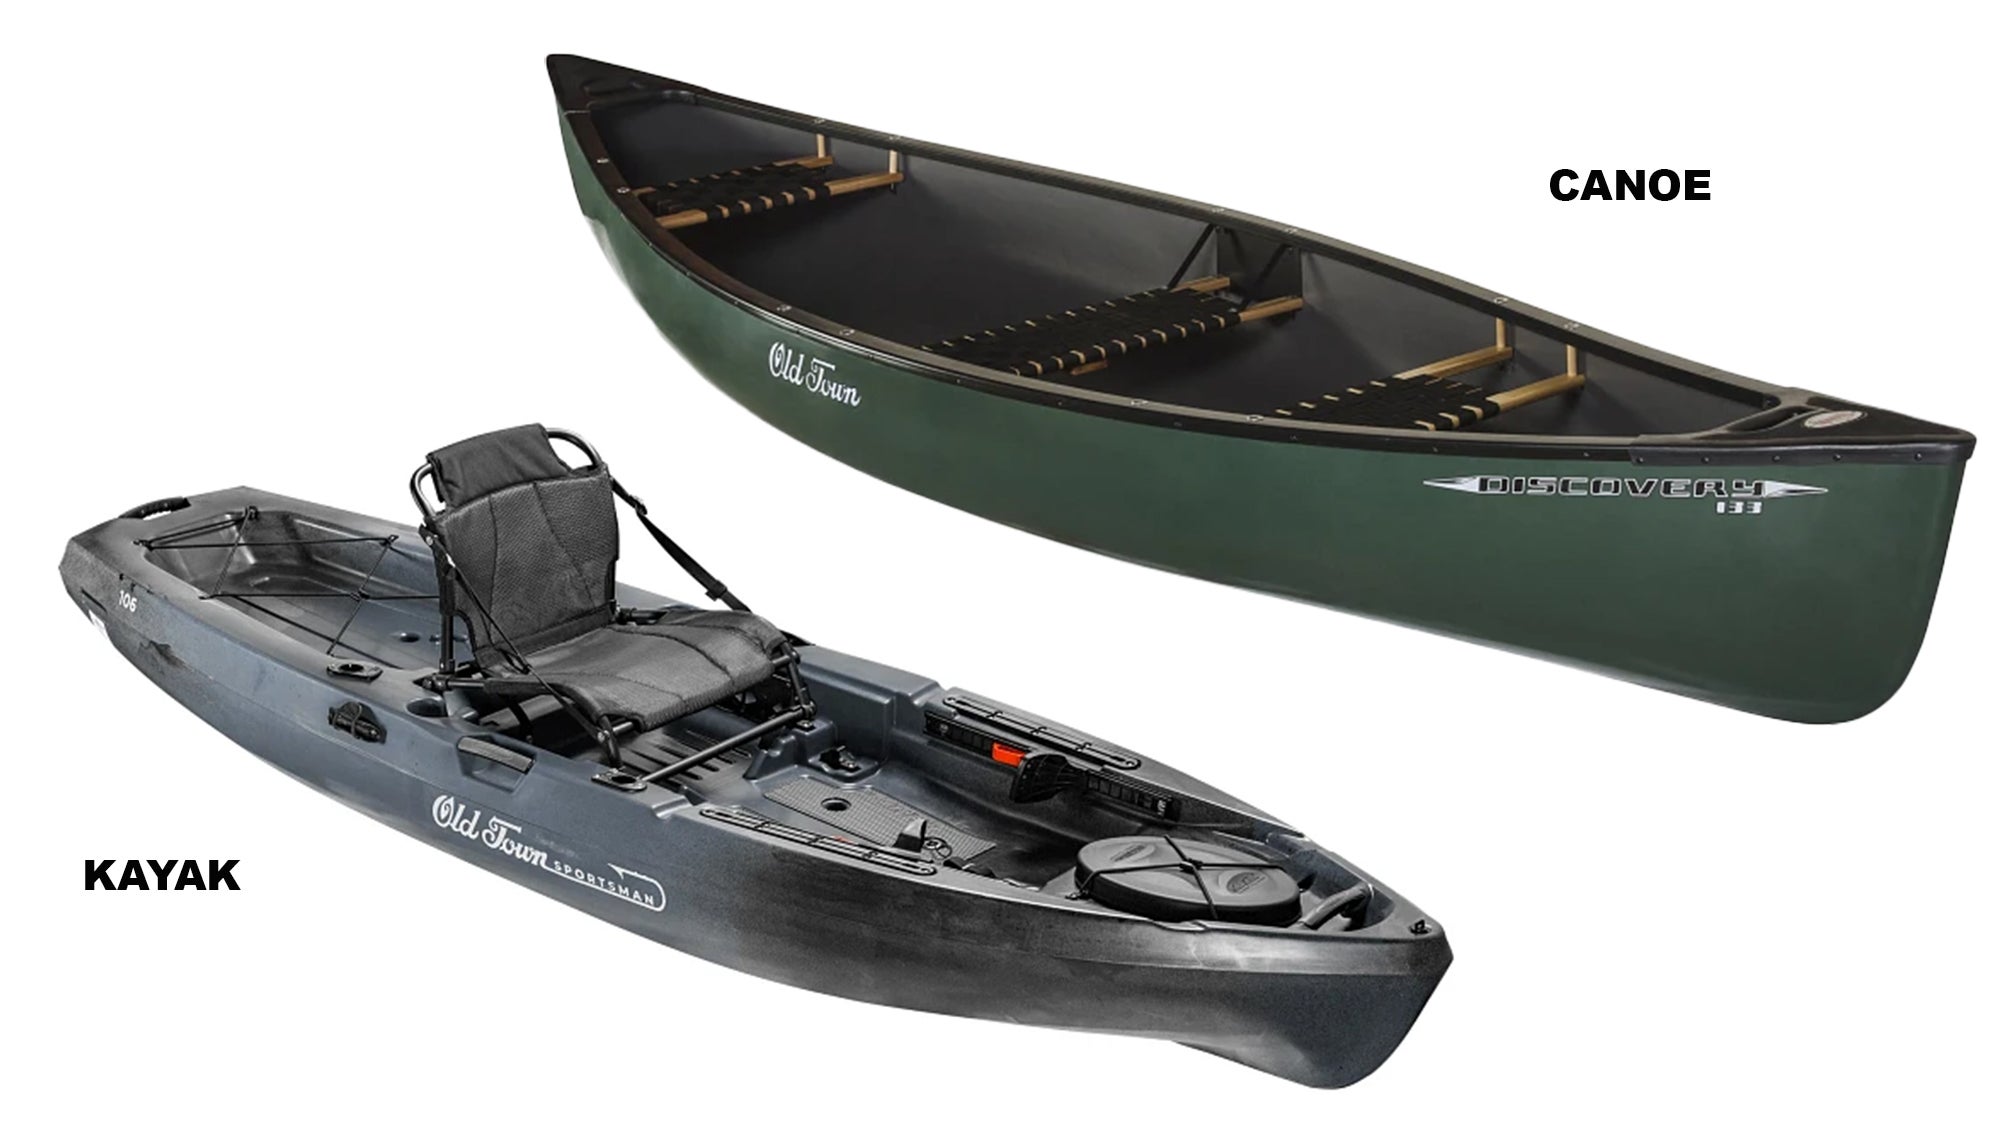 Green kayak on white background, left; green canoe on white background, right.